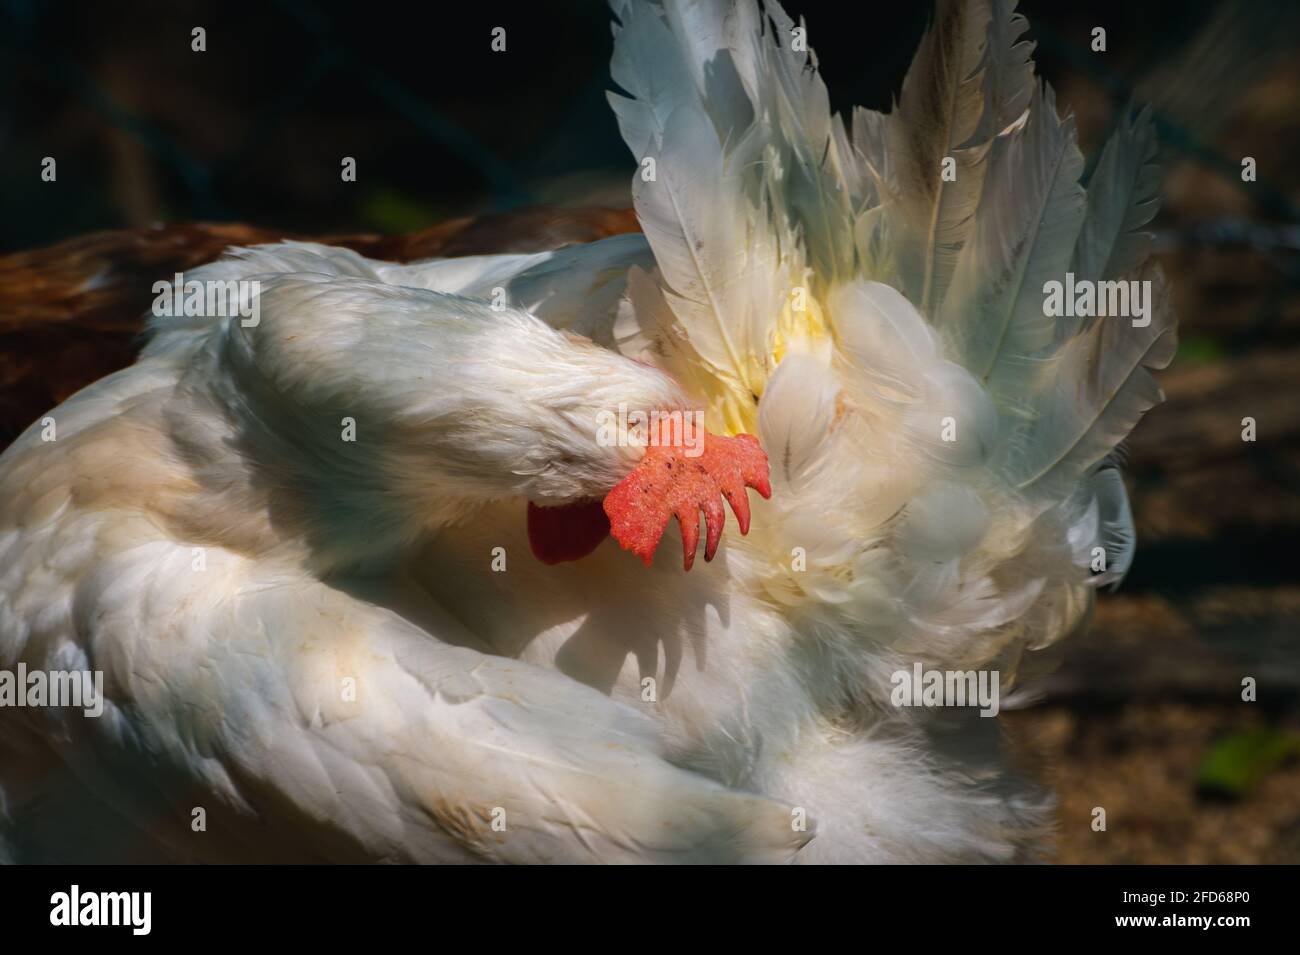 Polla blanca pecking su propio culo, la limpieza de su propio concepto de  lío, la posición inusual de una fotografía de pájaro. Poner la cabeza en el  culo meme Fotografía de stock -